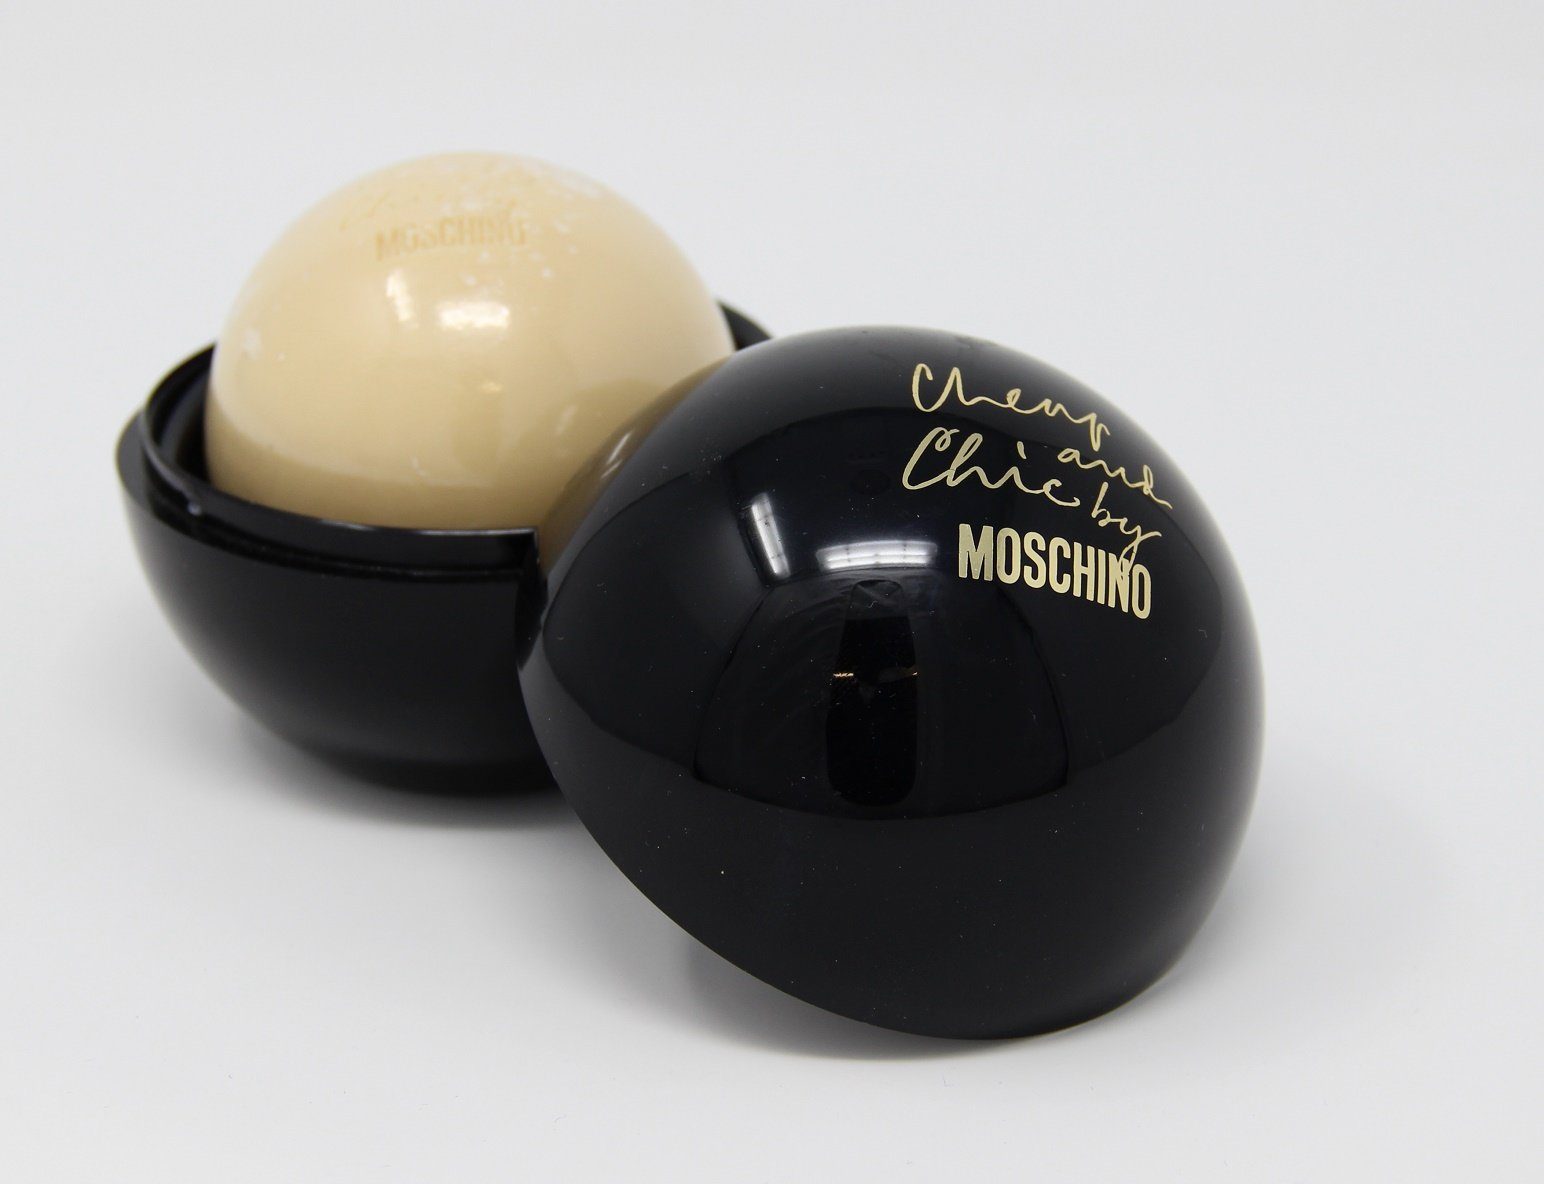 Moschino 100g Handseife Seife Cheap and Perfumed Chic Moschino